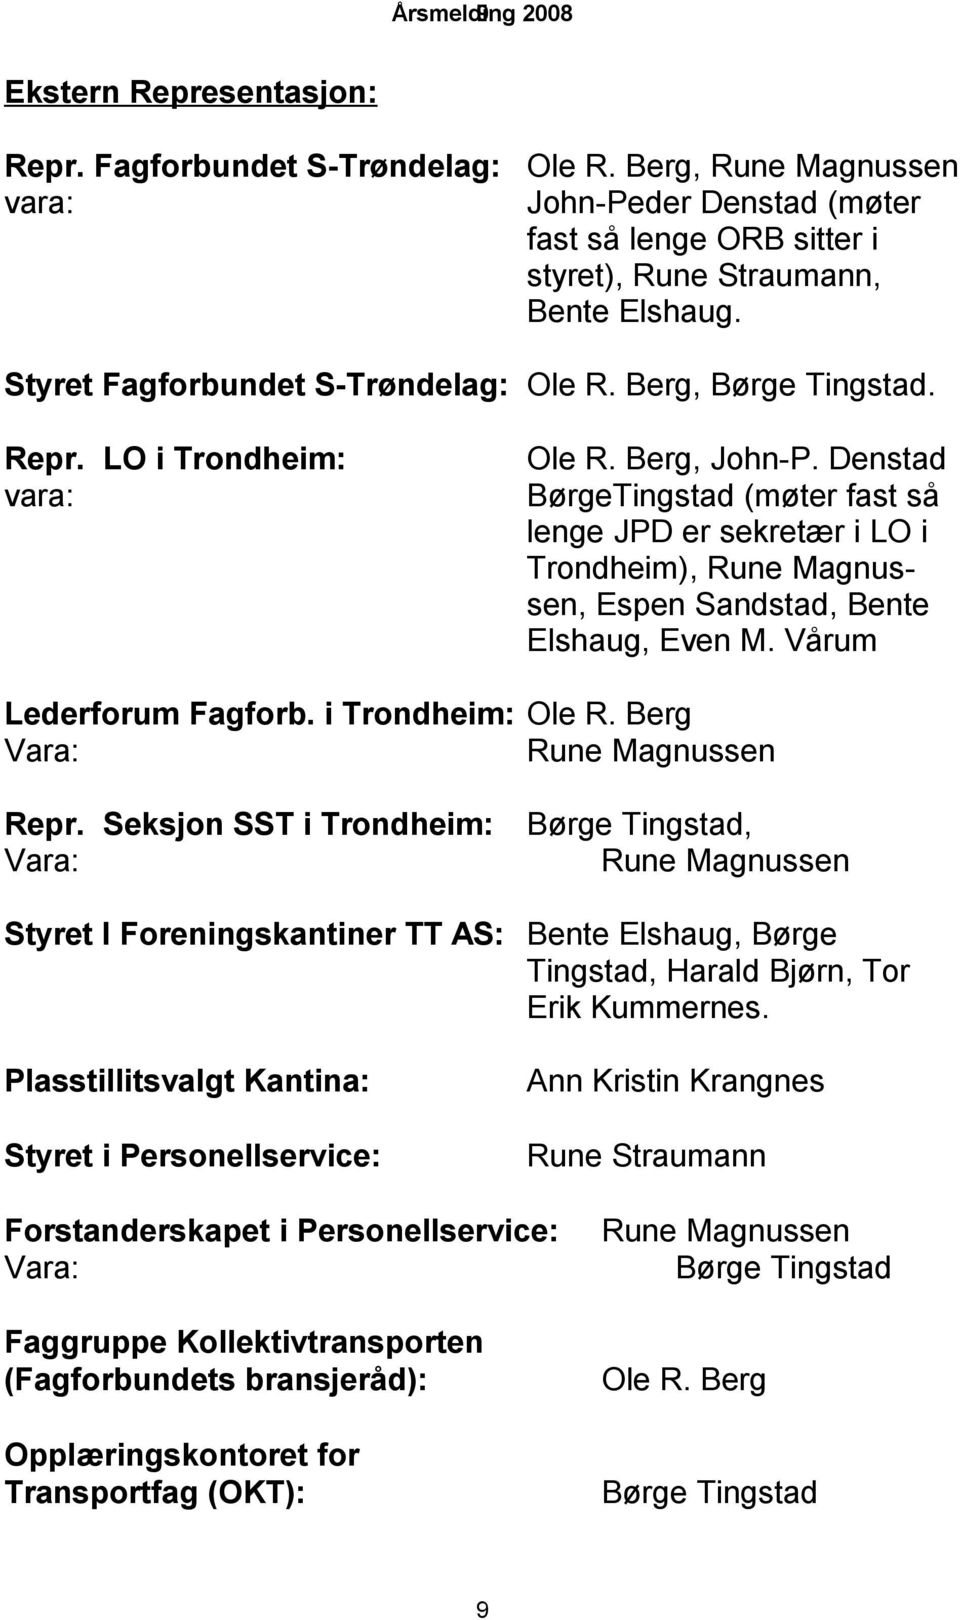 Denstad vara: BørgeTingstad (møter fast så lenge JPD er sekretær i LO i Trondheim), Rune Magnussen, Espen Sandstad, Bente Elshaug, Even M. Vårum Lederforum Fagforb. i Trondheim: Ole R.